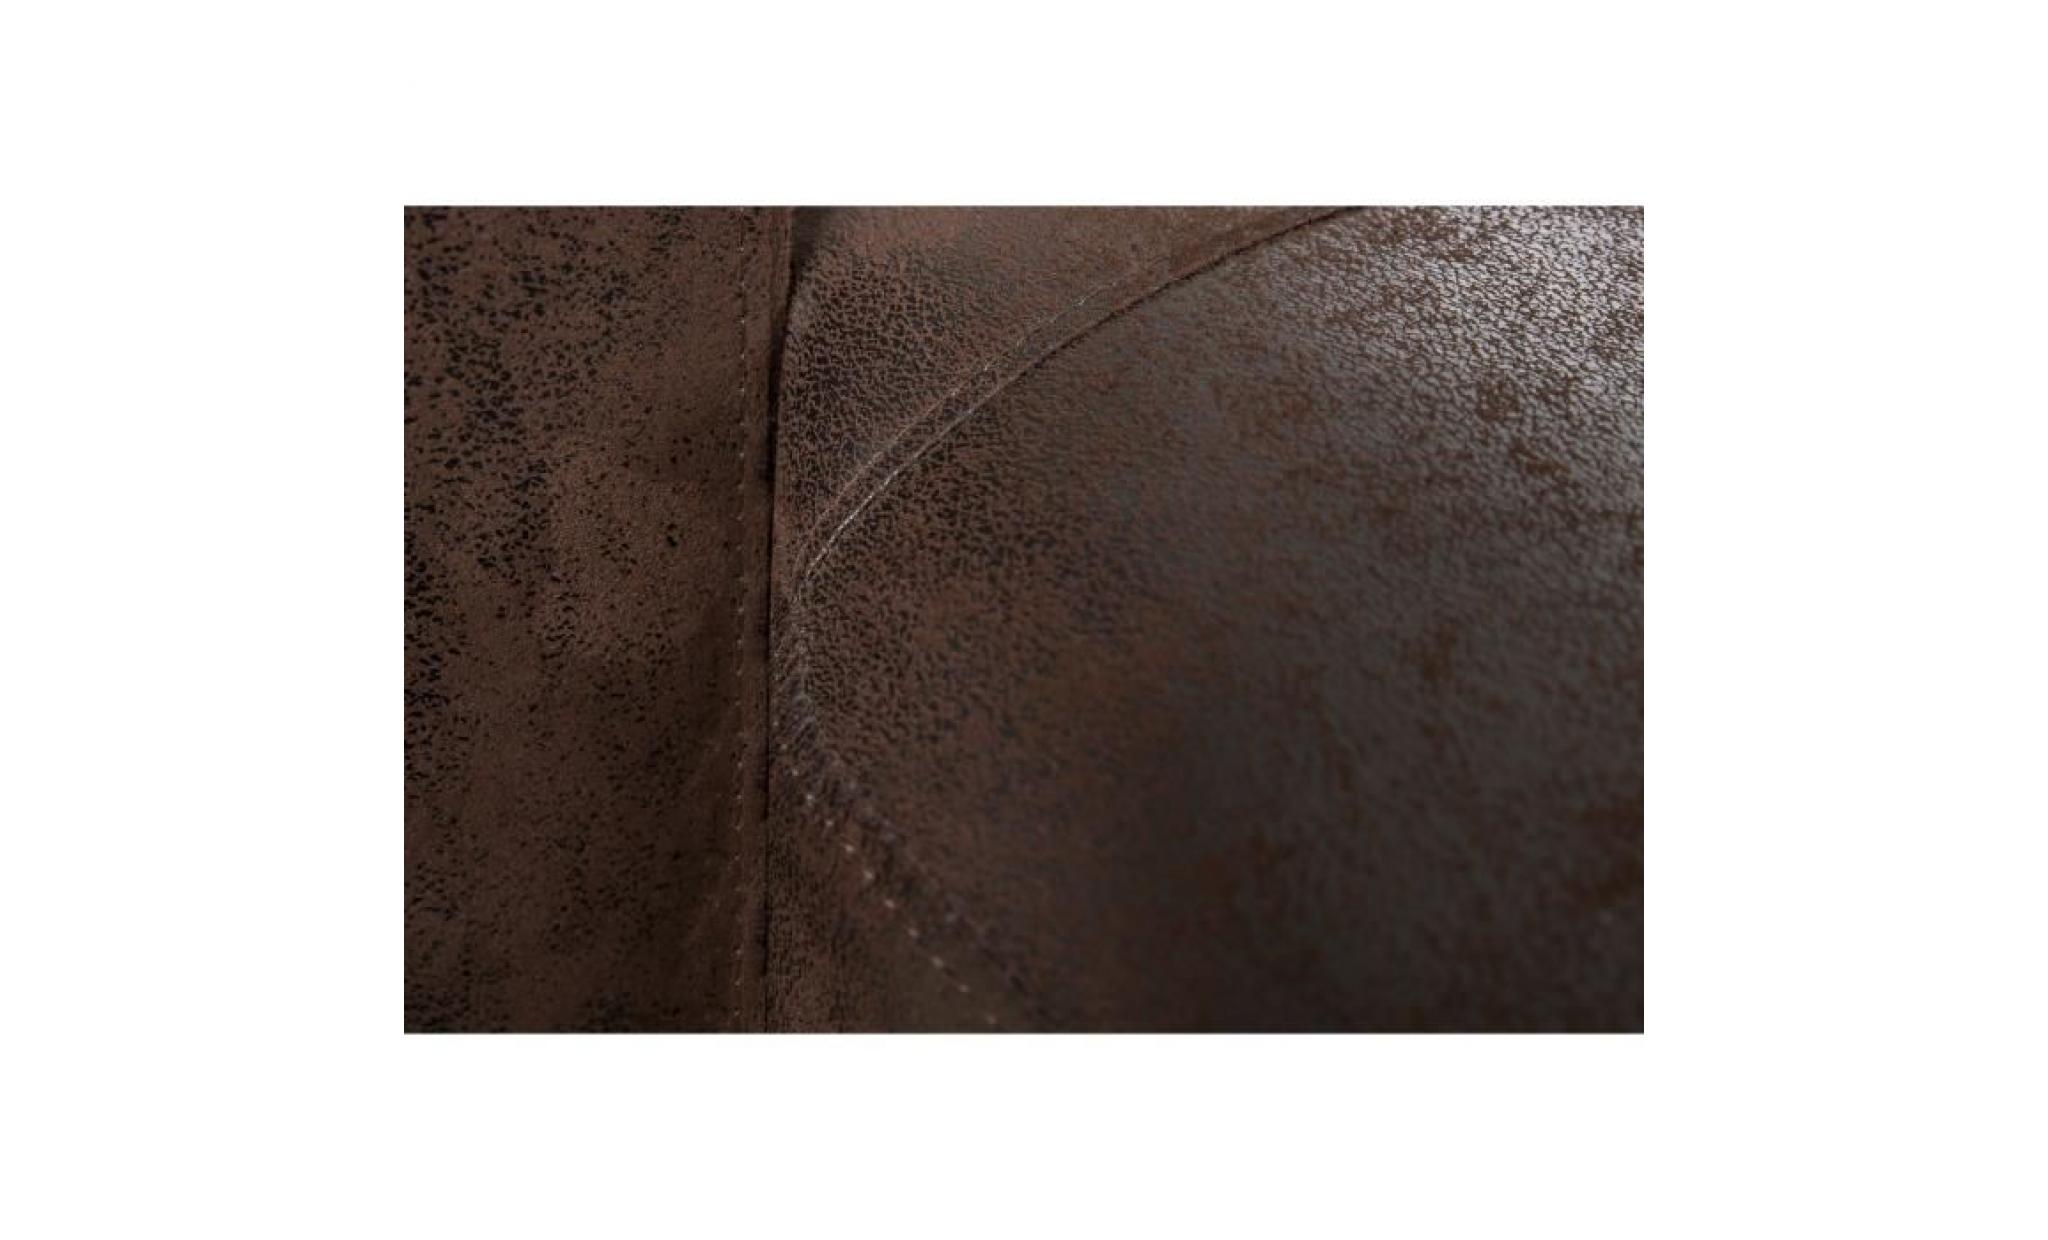 malma canapé d'angle panoramique 7 places   tissu marron vintage   contemporain   l 336 x p 173 212 cm pas cher